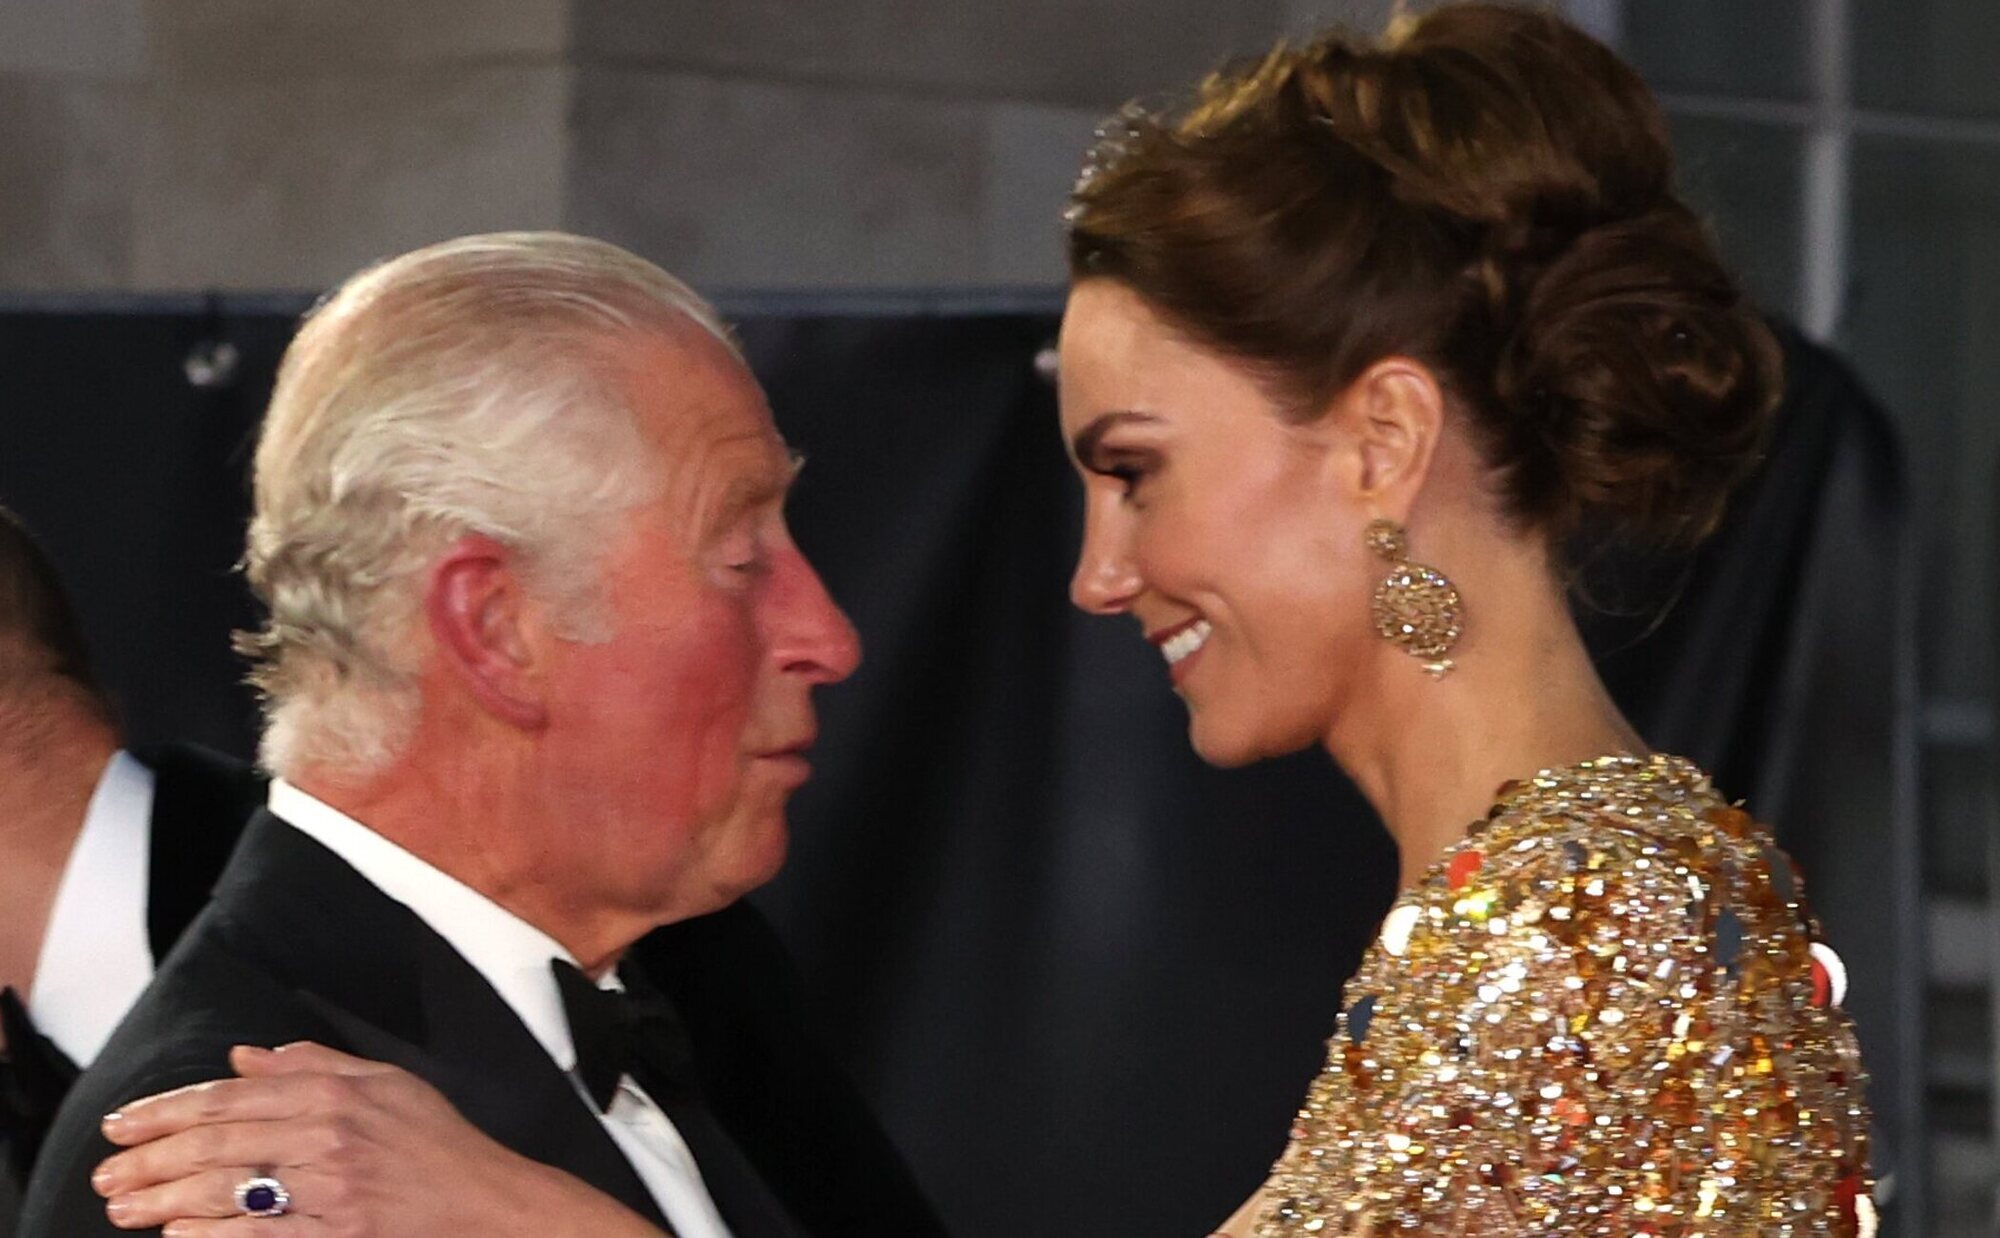 La hasta ahora desconocida reunión de Carlos III y Kate Middleton antes de desvelarse el cáncer de la Princesa